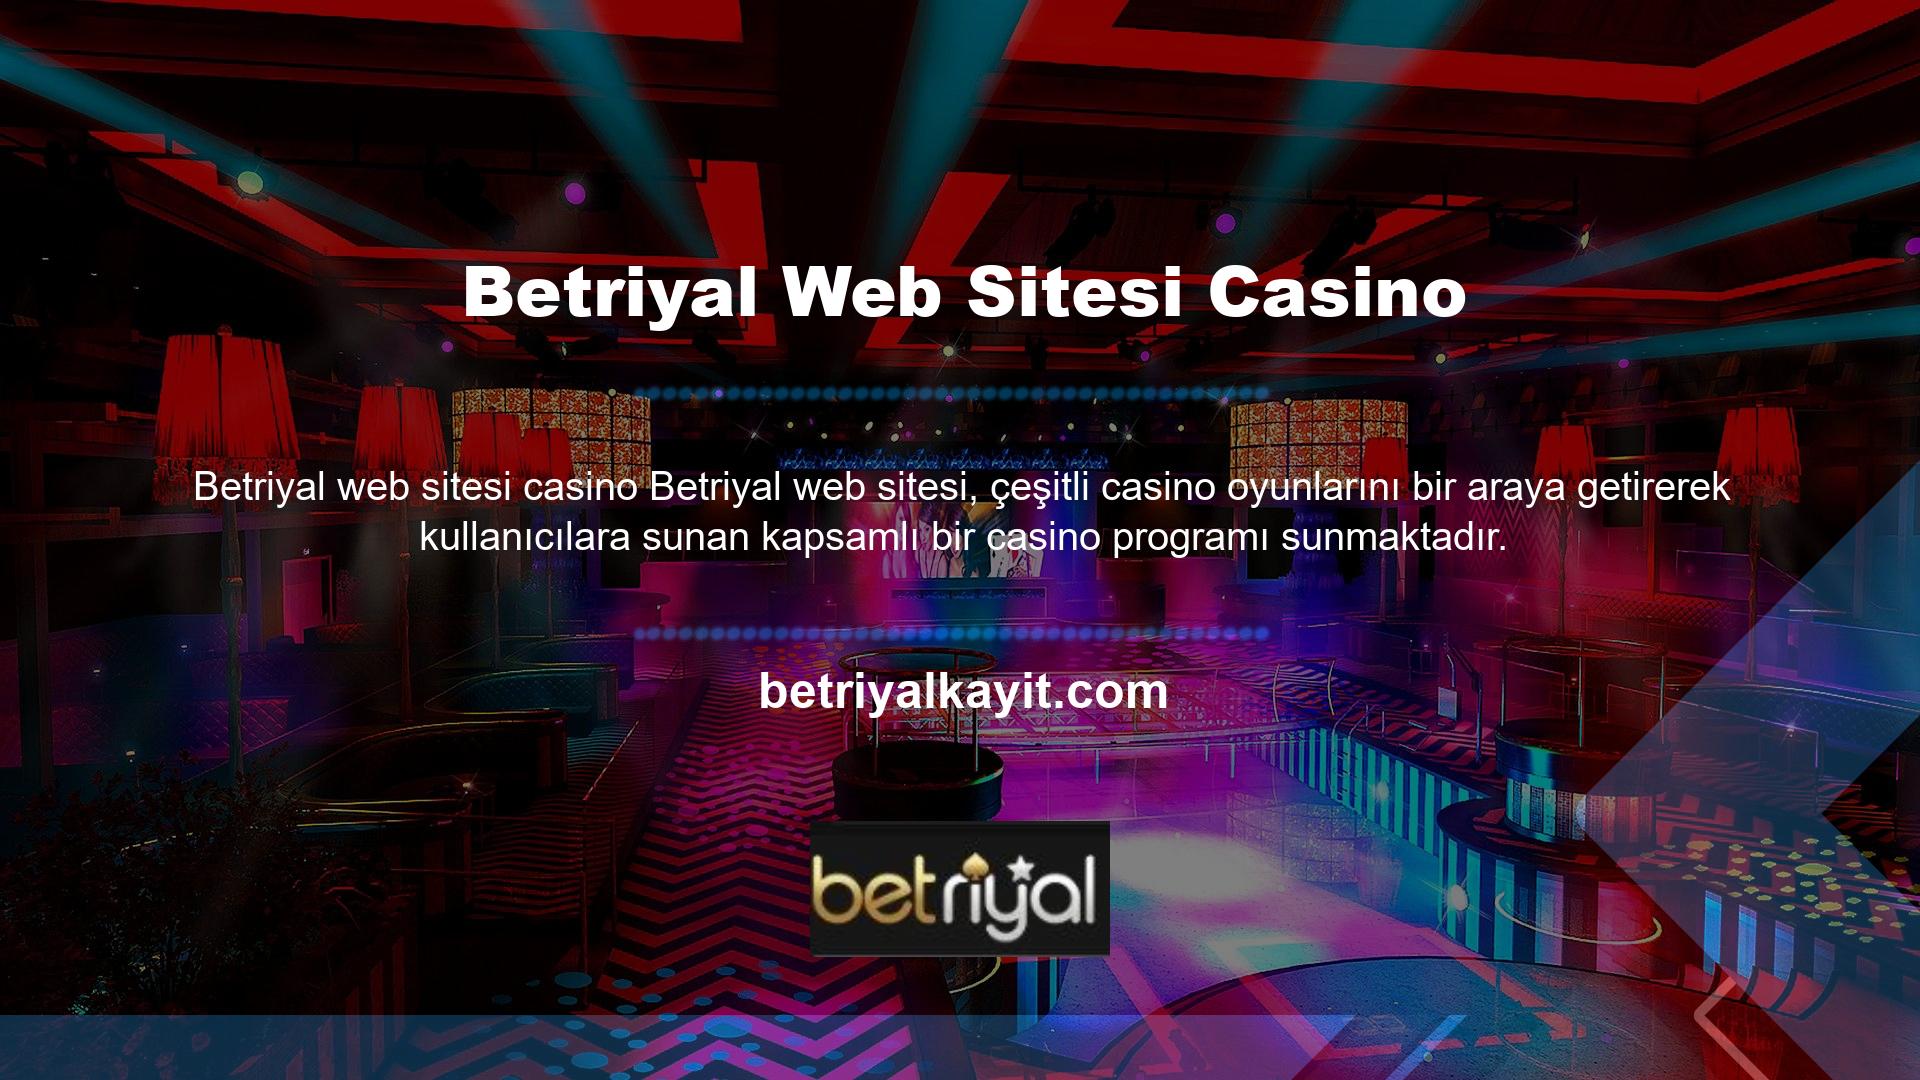 Bu web sitesinin casino uygulamasında slot makineleri, video slot makineleri, jackpotlar, poker oyunları, zar oyunları ve daha fazlası dahil olmak üzere birçok ilginç bahis oyunu bulunmaktadır